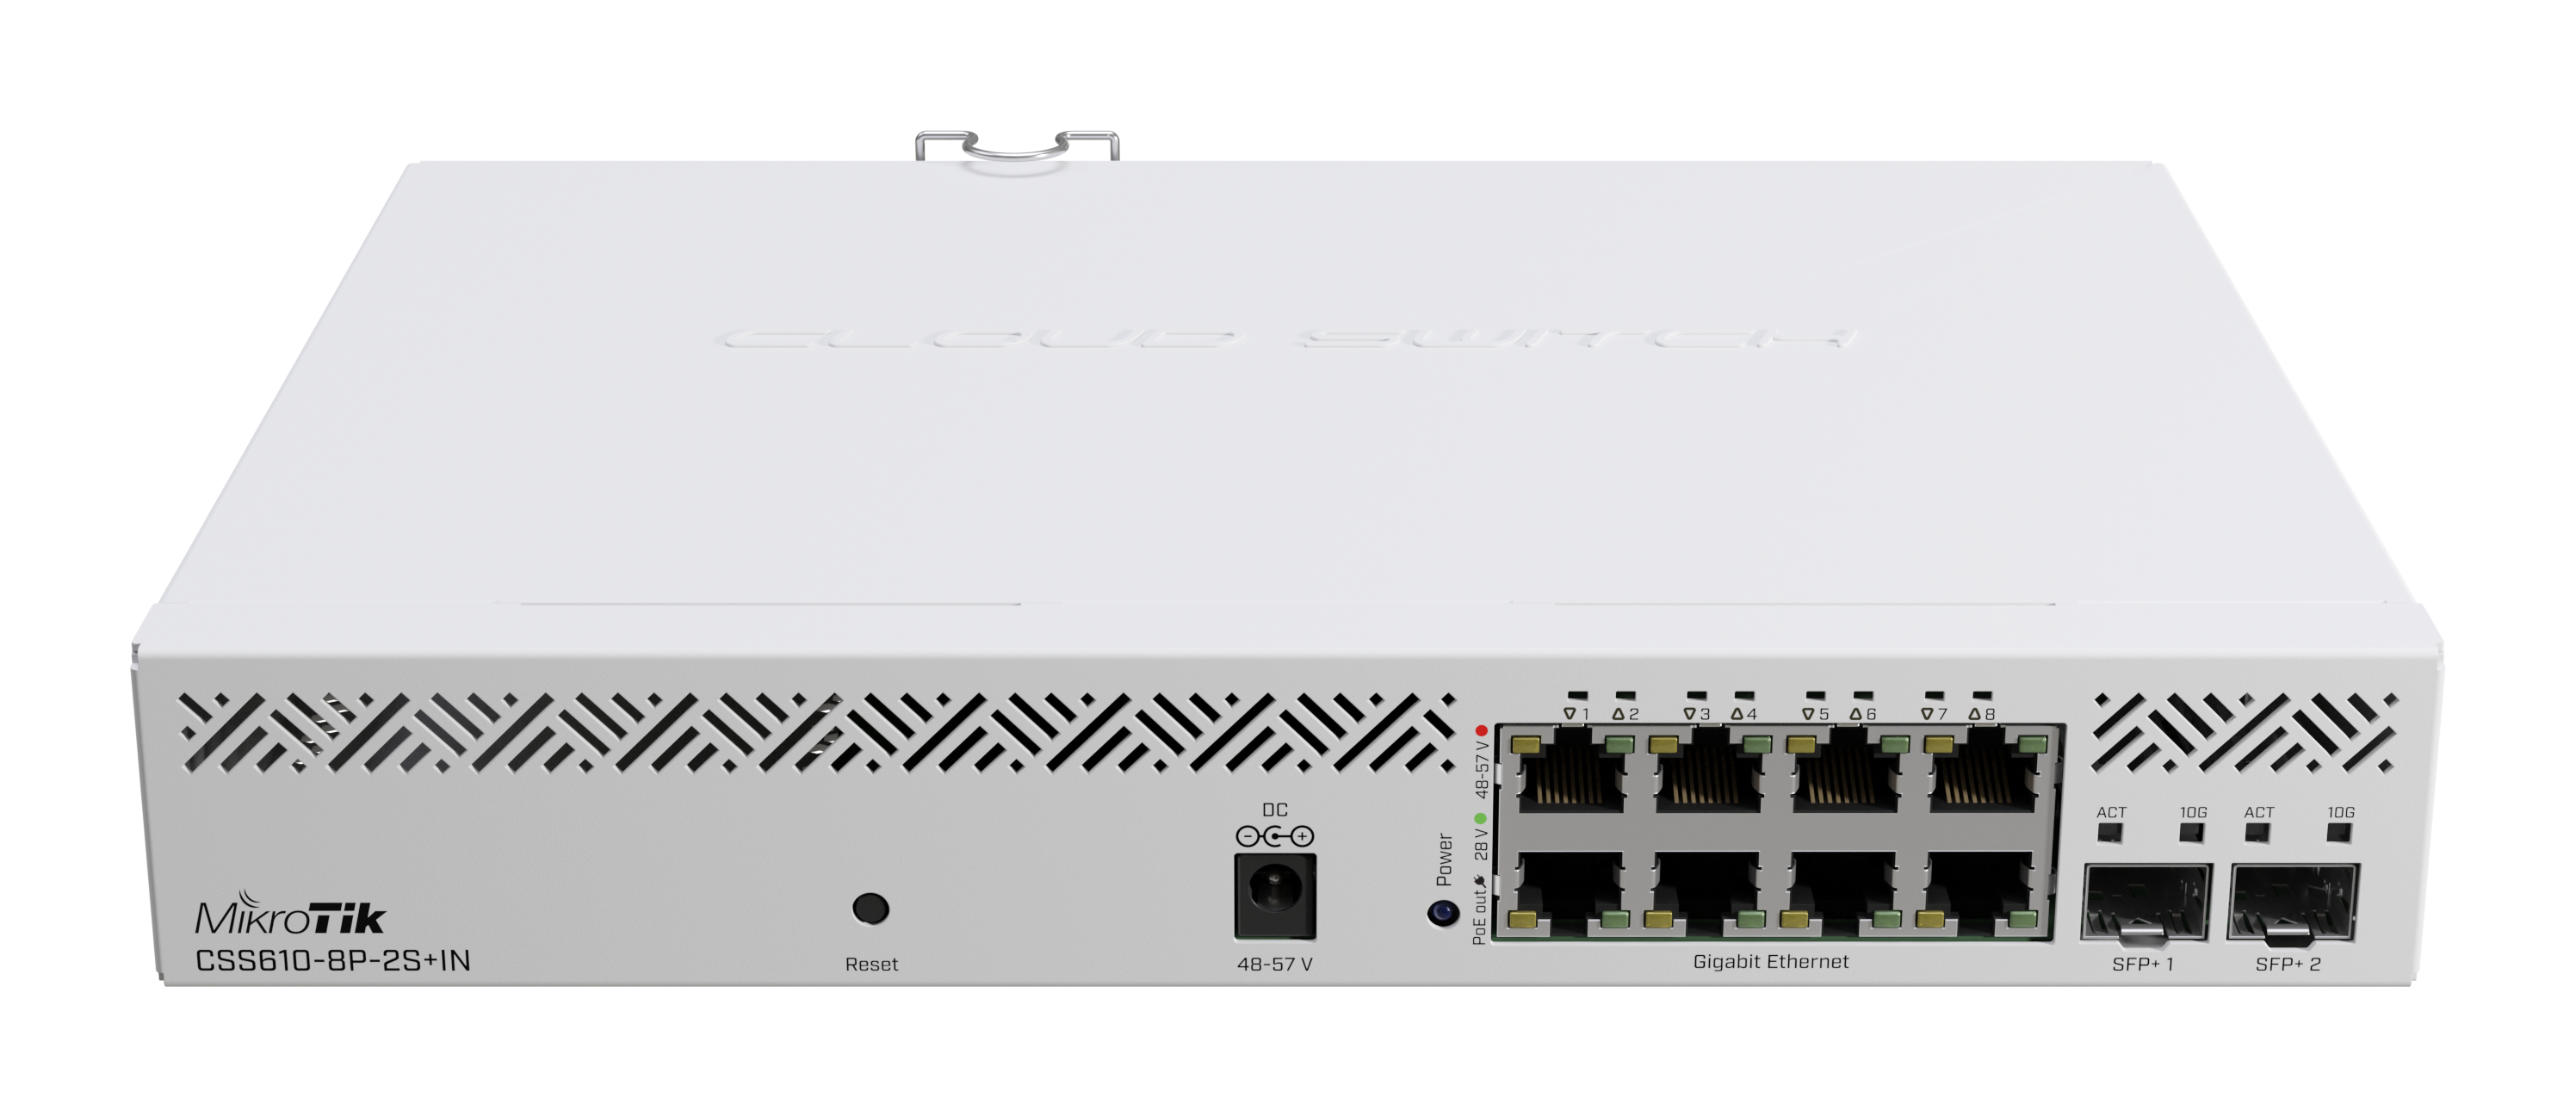 Коммутатор MikroTik Cloud Smart Switch CSS610-8P-2S+IN, управляемый, кол-во портов: 8x1 Гбит/с, кол-во SFP/uplink: SFP+ 2x10 Гбит/с, установка в стойку, PoE: 8x30Вт (макс. 140Вт) (CSS610-8P-2S+IN)